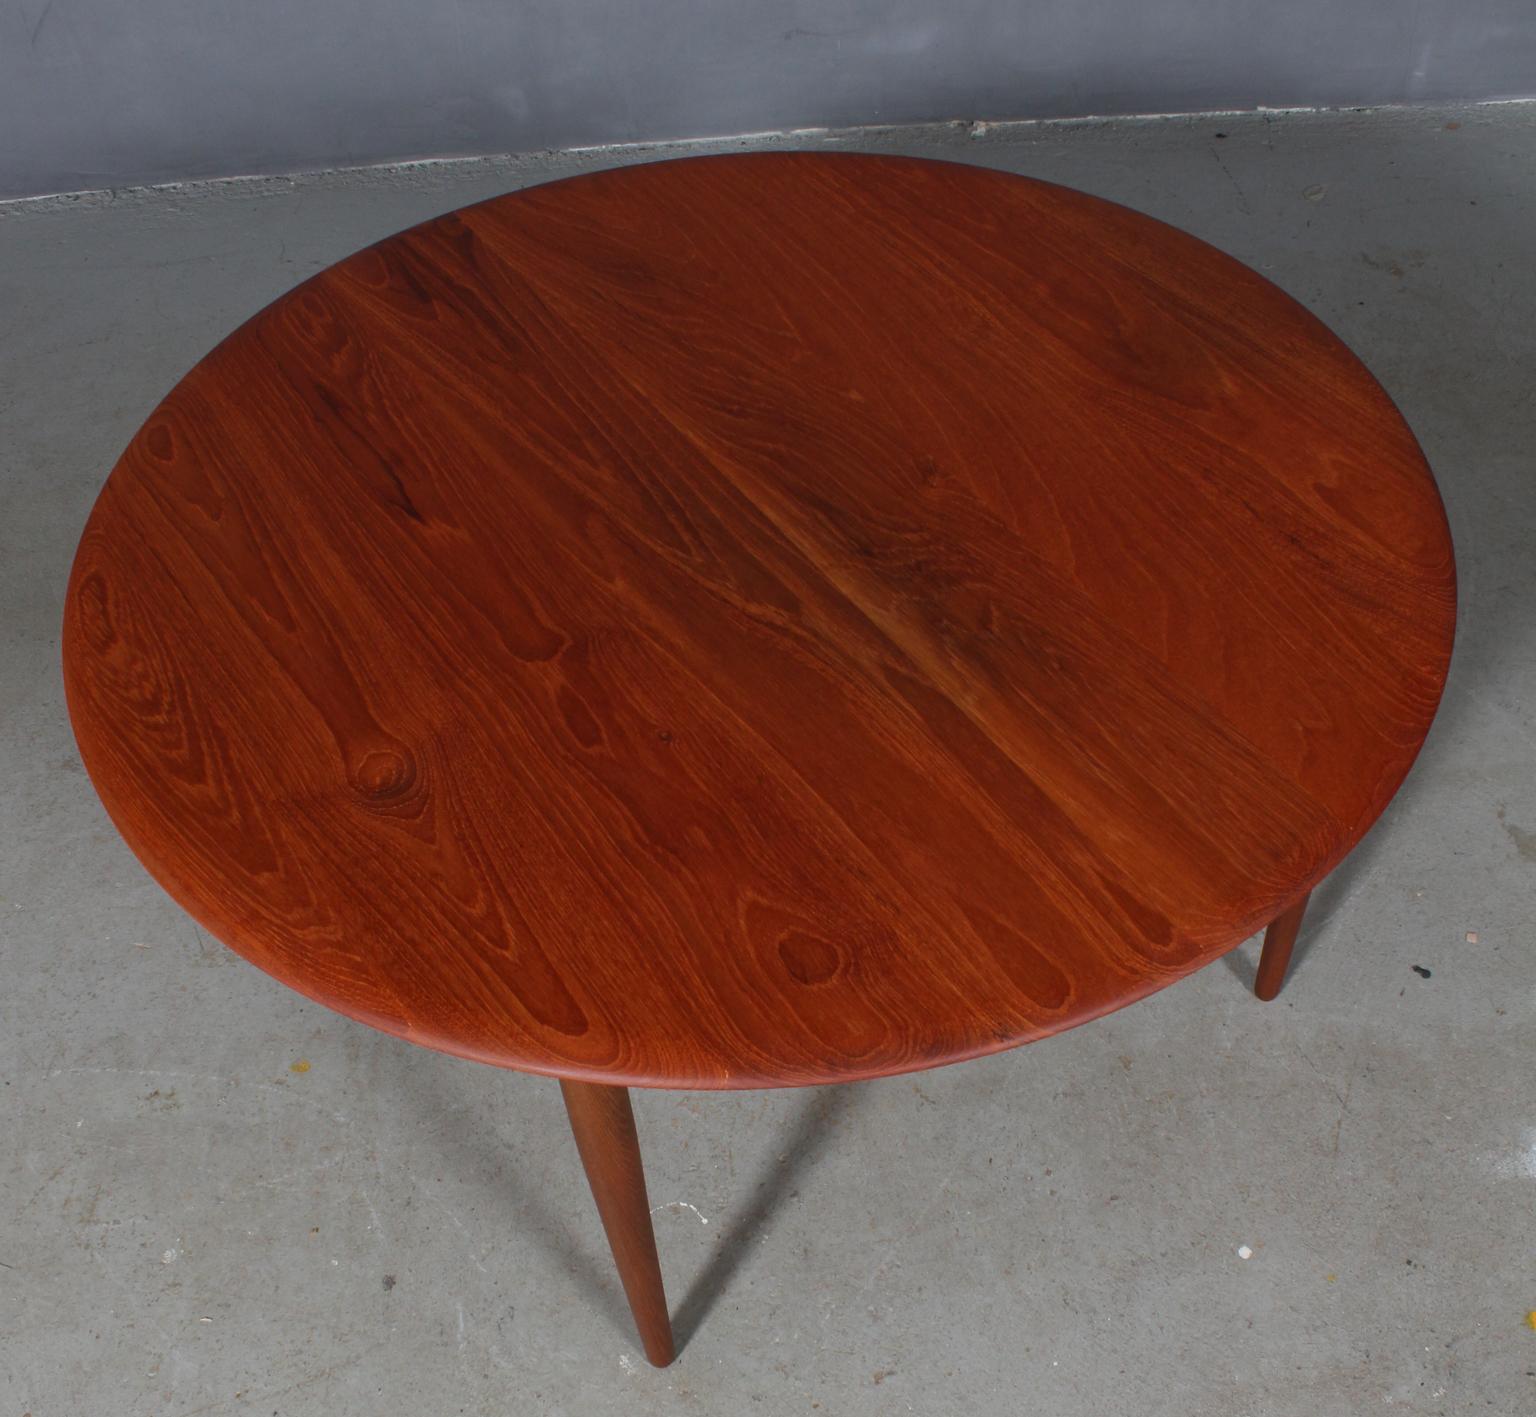 Peter Hvidt & Orla Mølgaard Nielsen sofa table in sold teak.

Made by France & Daverkosen in the 1960s.